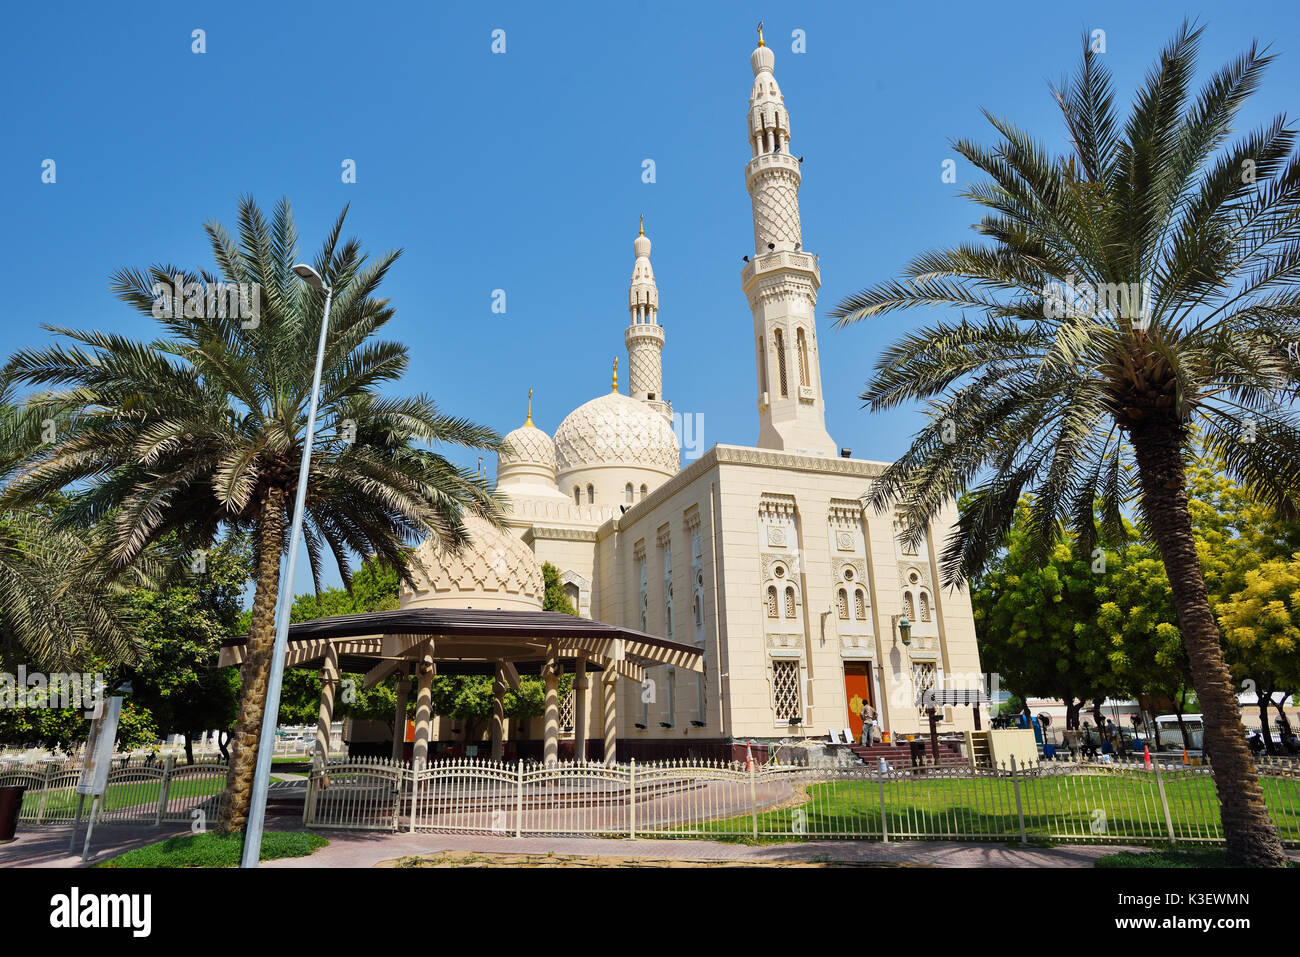 Dubai, Vereinigte Arabische Emirate - Okt 8, 2016: Jumeirah Grand Mosque in Dubai, der Jumeirah Moschee ist die einzige Moschee in Dubai, der zur öffentlichkeit geöffnet ist Stockfoto